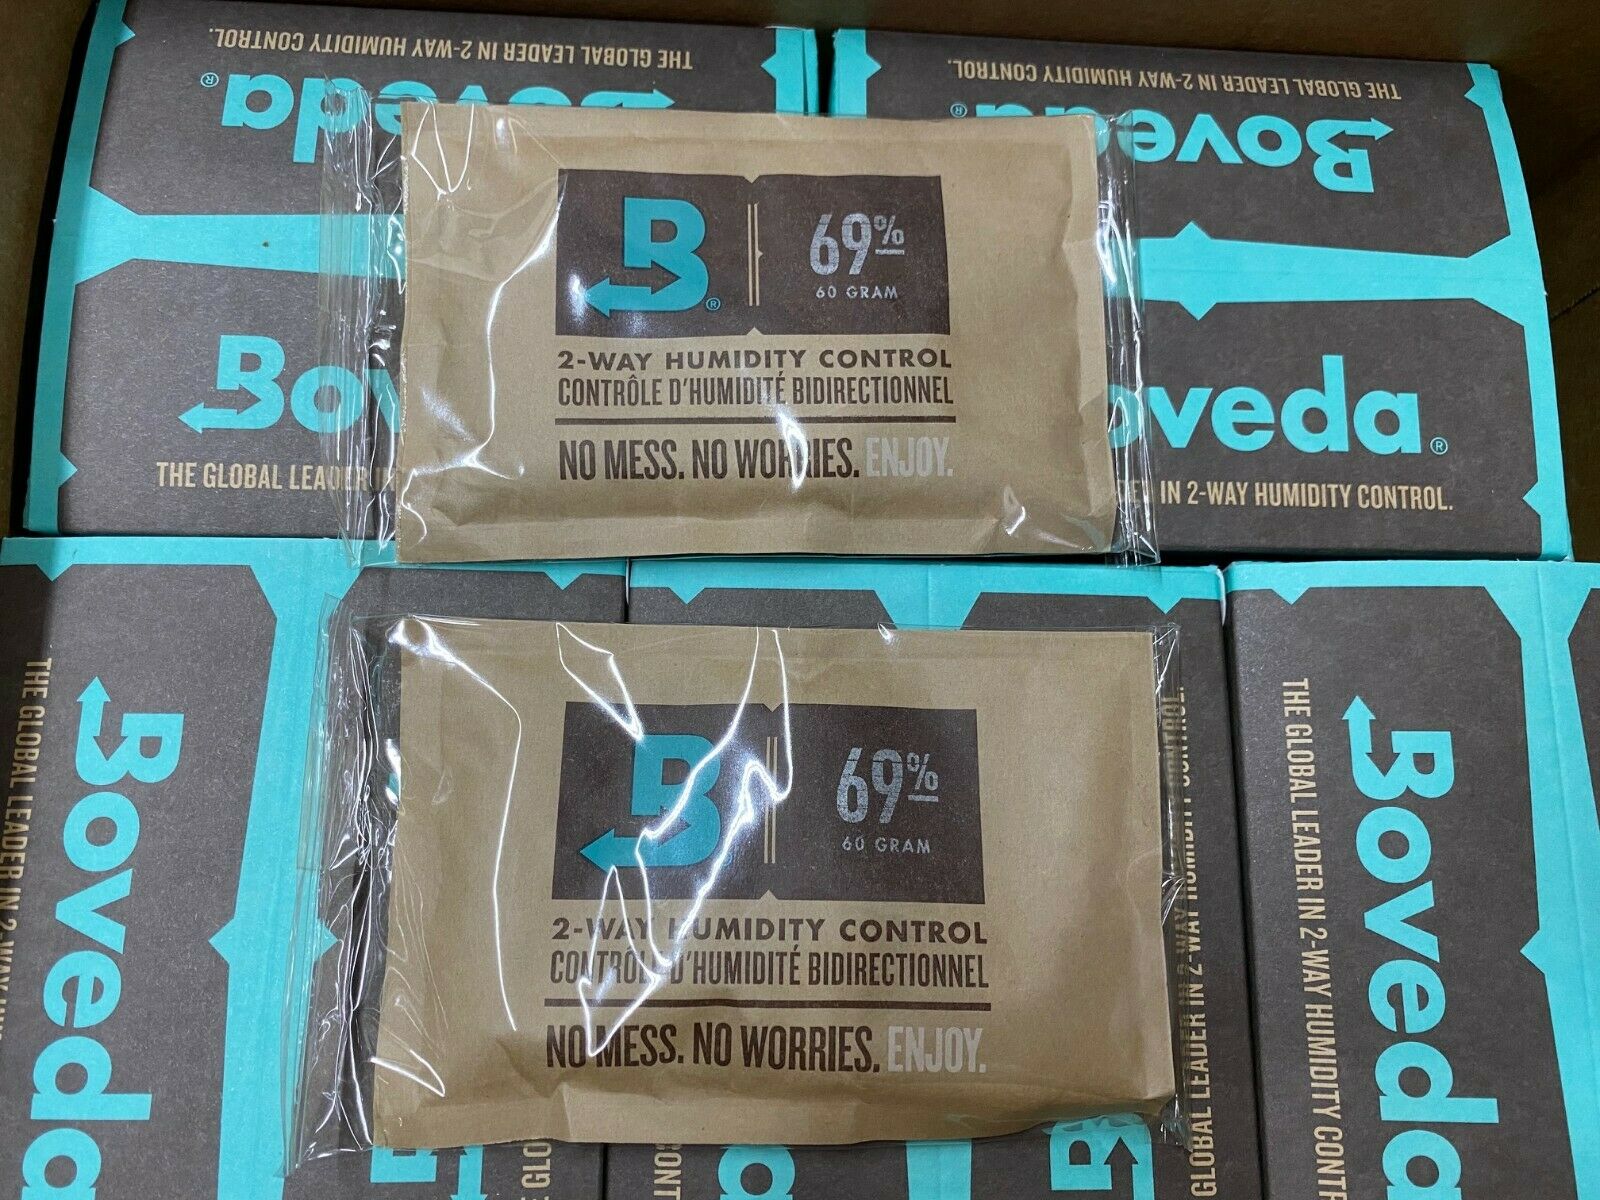 Boveda 2-way 69% Rh Humidity Control (60 Gram) Humidifier Packs (2 Packets)